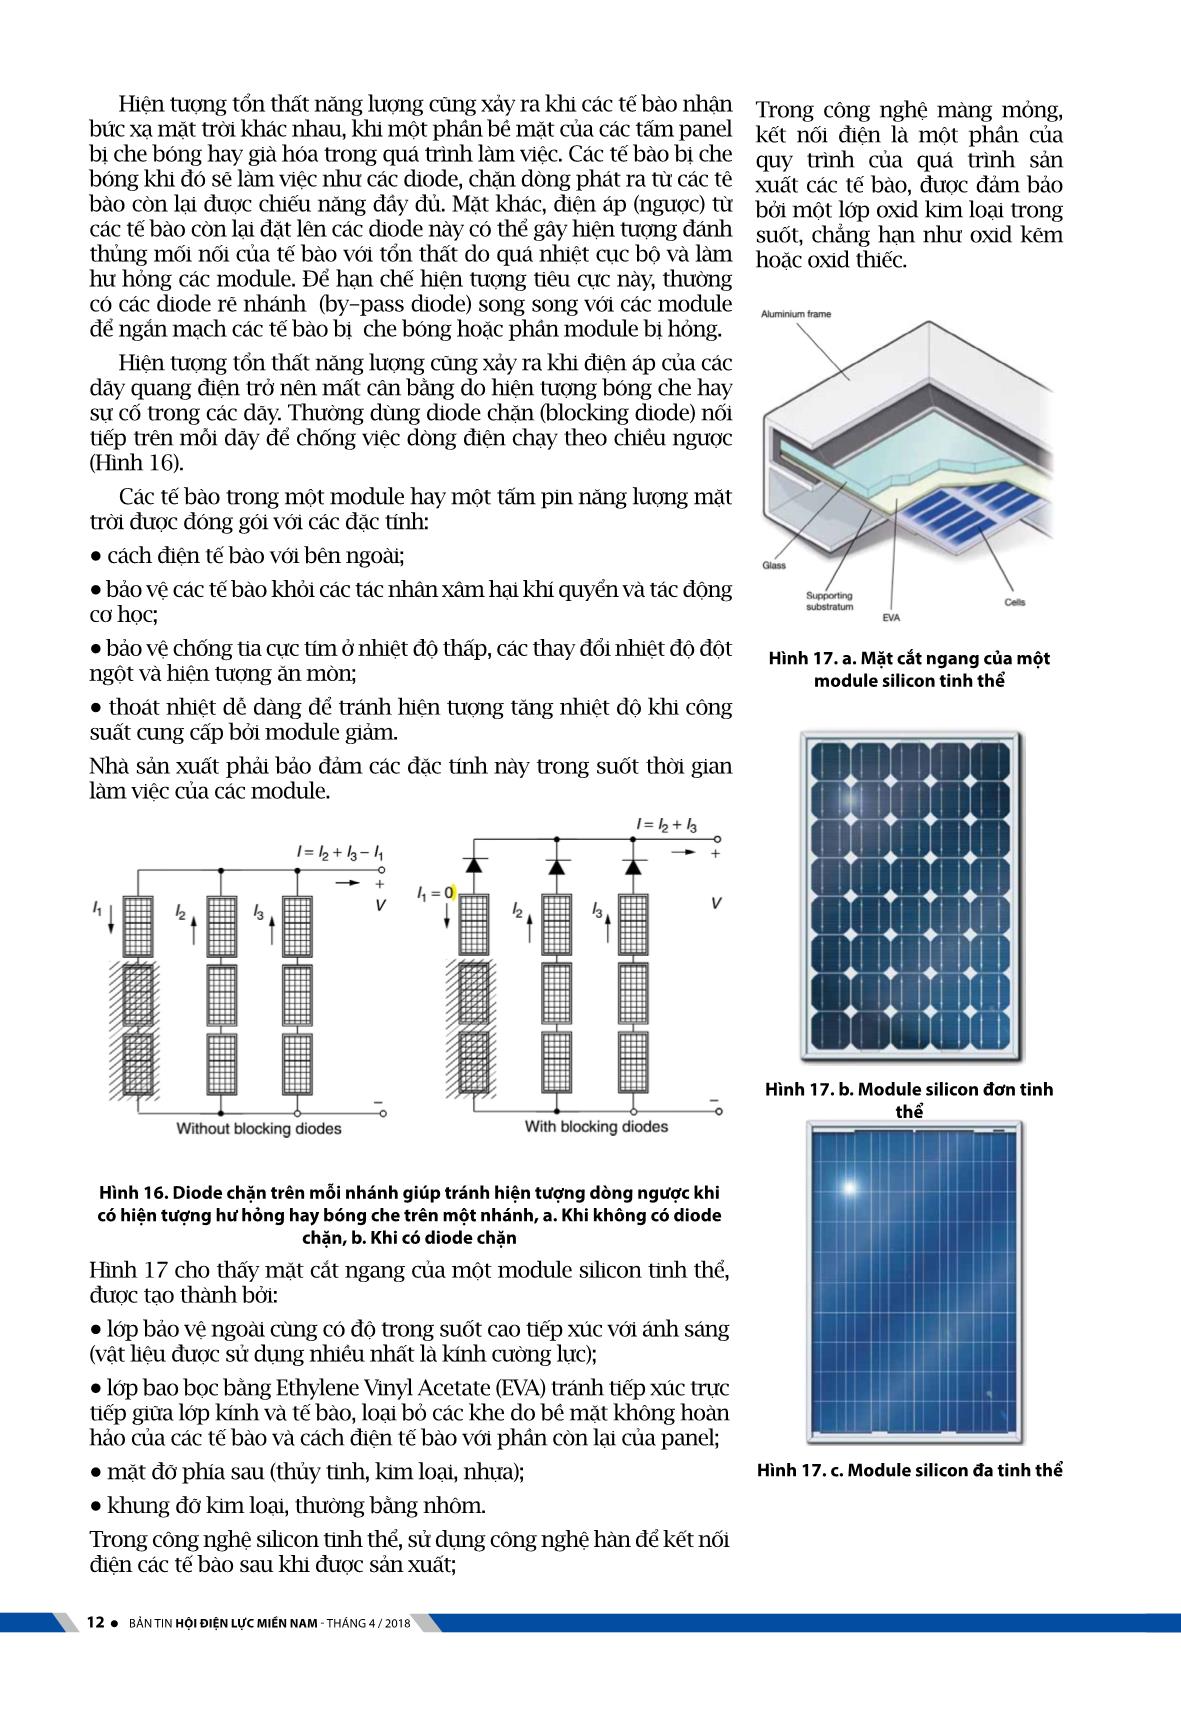 Kỹ thuật hệ thống điện mặt trời với công nghệ quang điện (Phần 1) trang 8